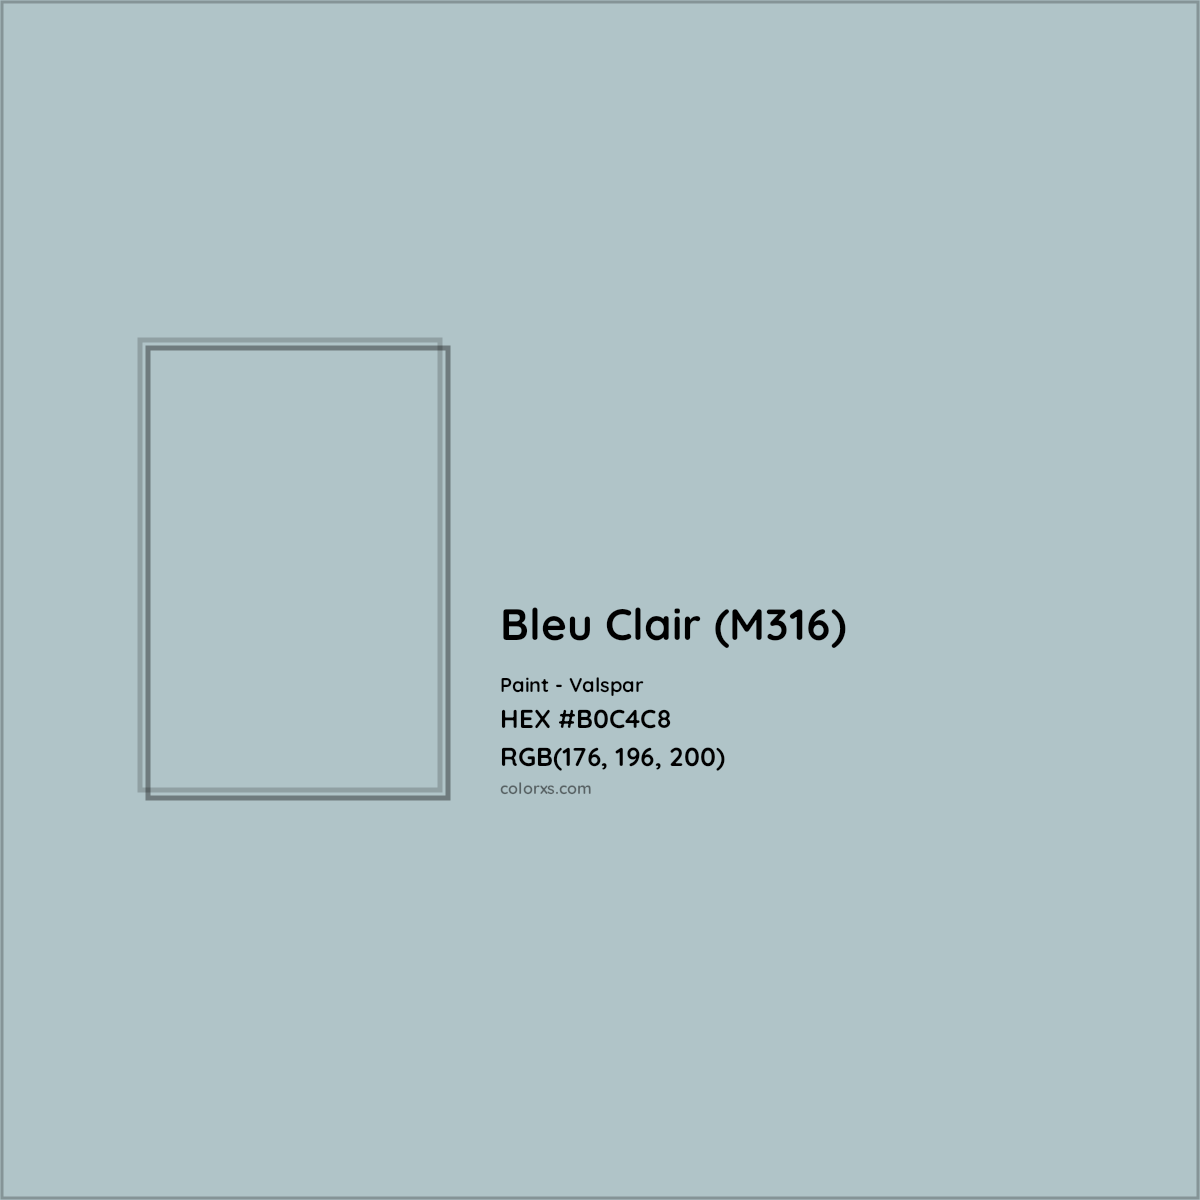 HEX #B0C4C8 Bleu Clair (M316) Paint Valspar - Color Code